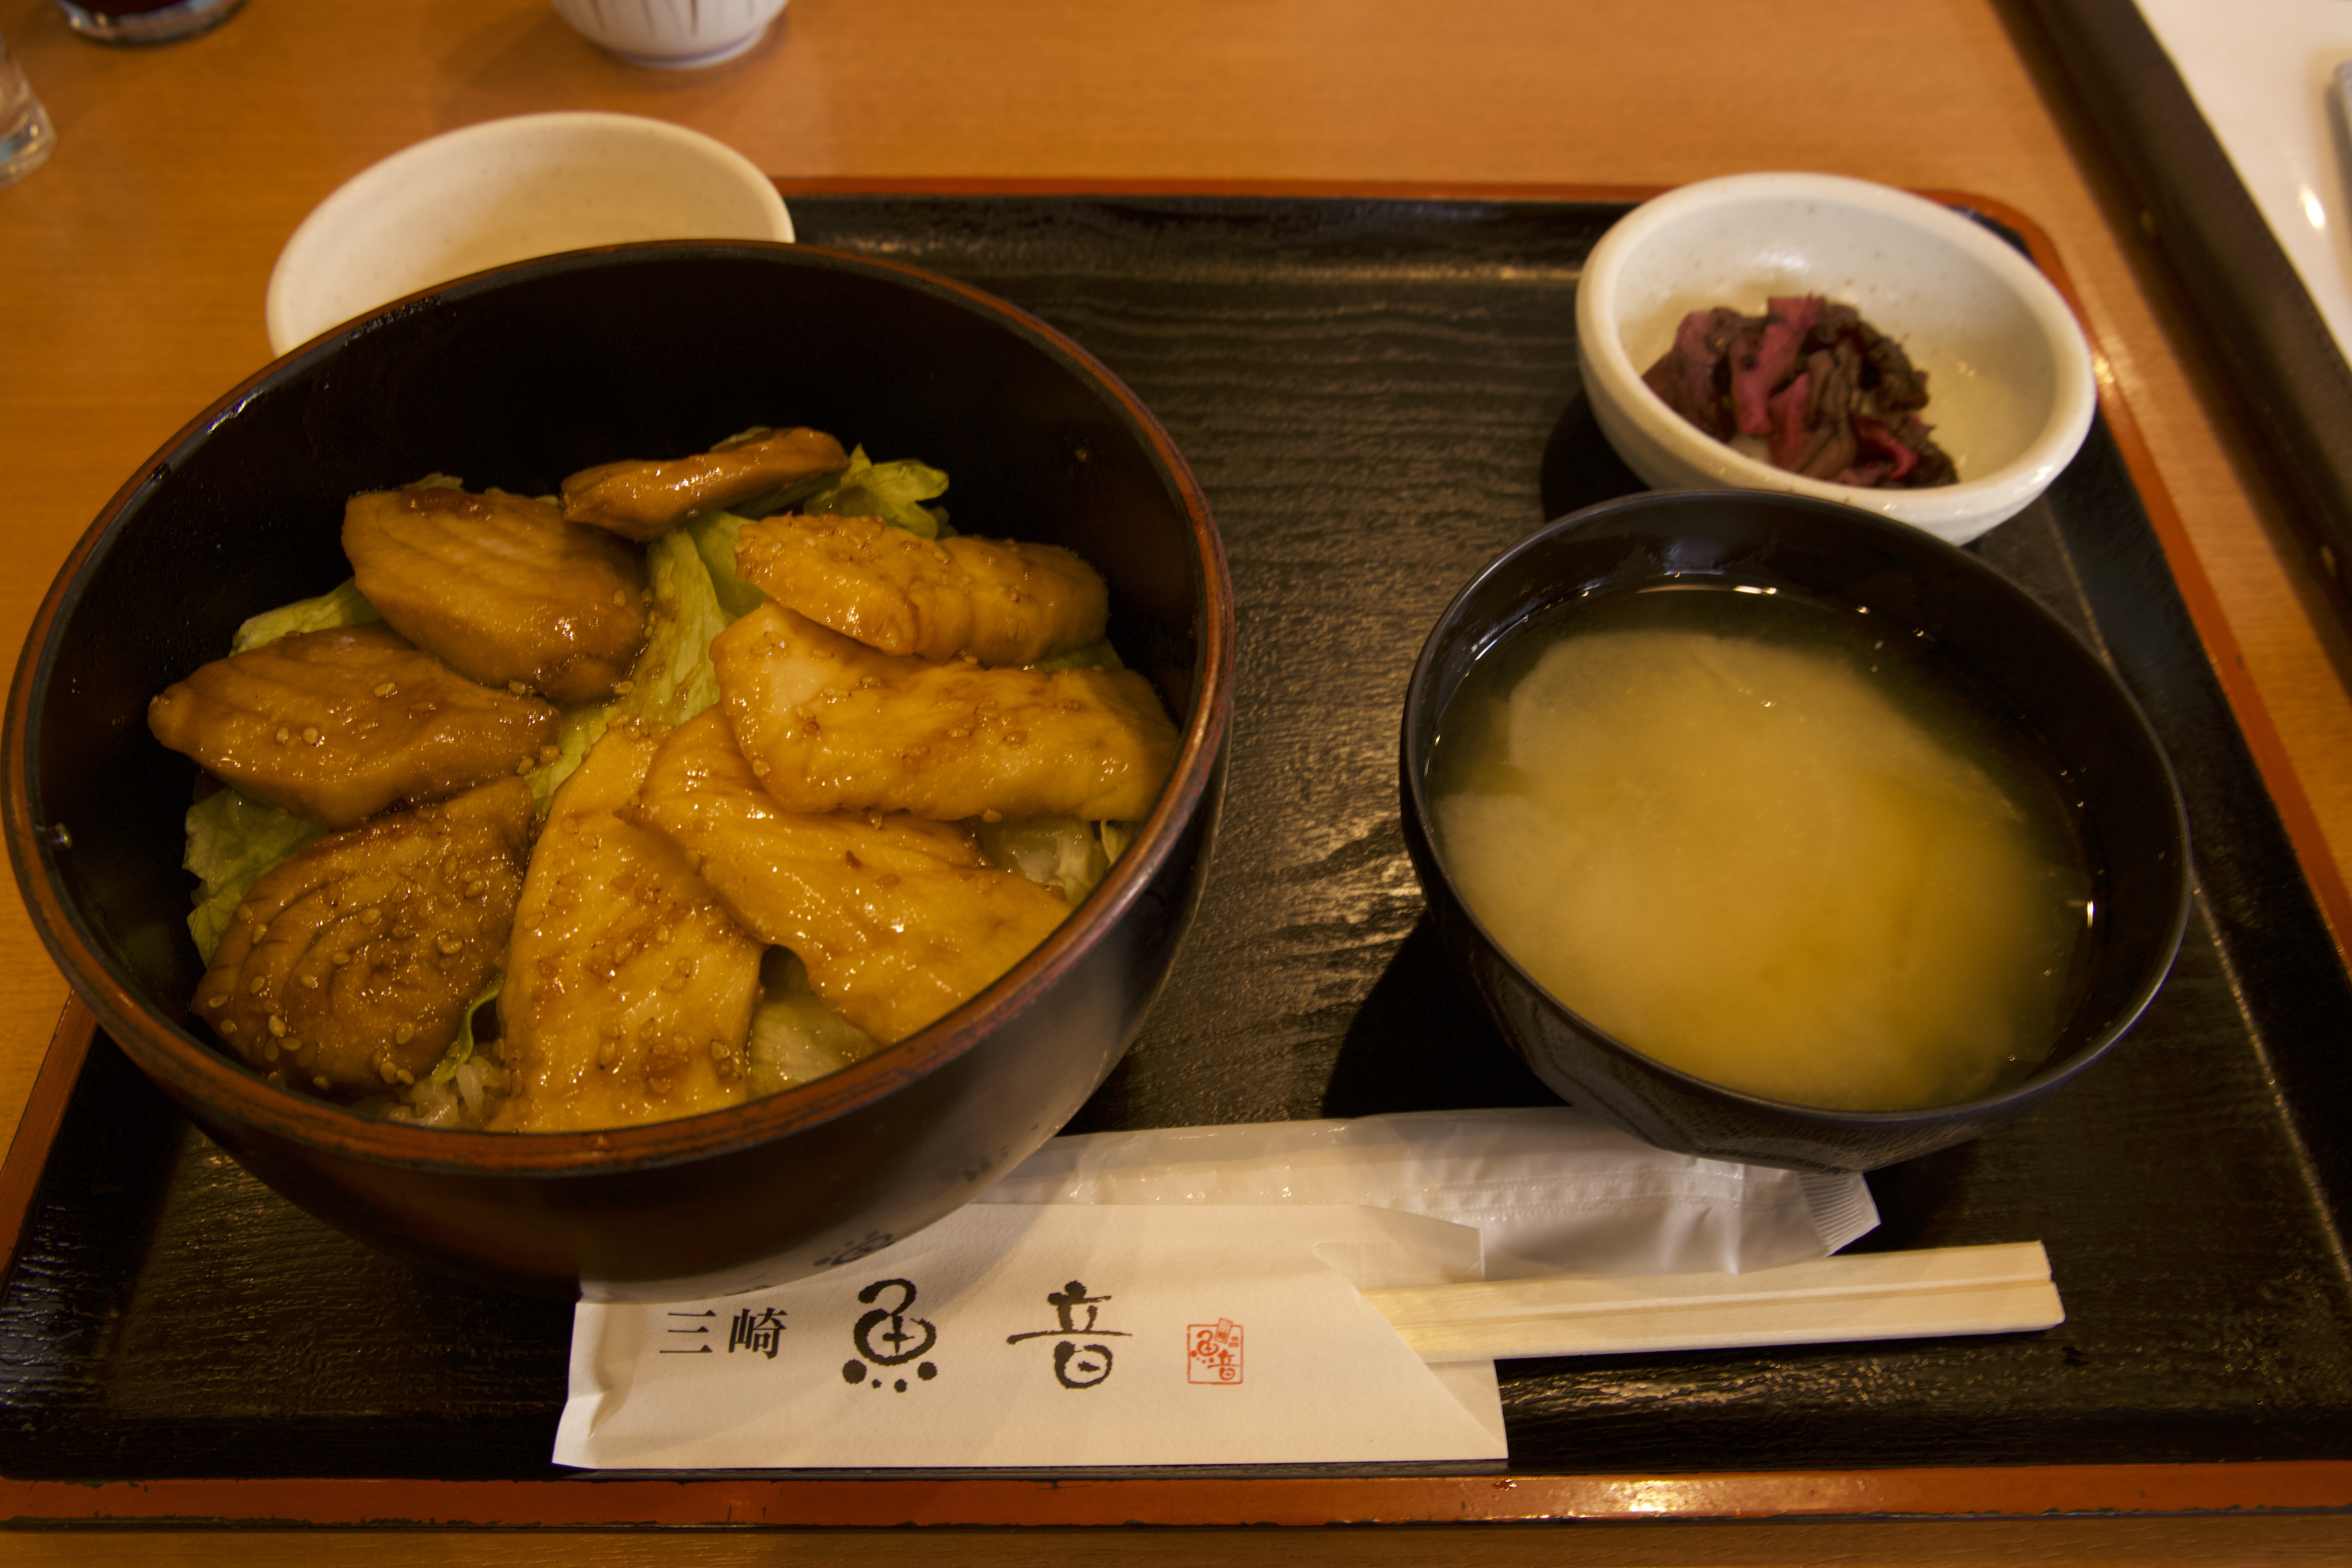 타레야키 덮밥(1,300엔)